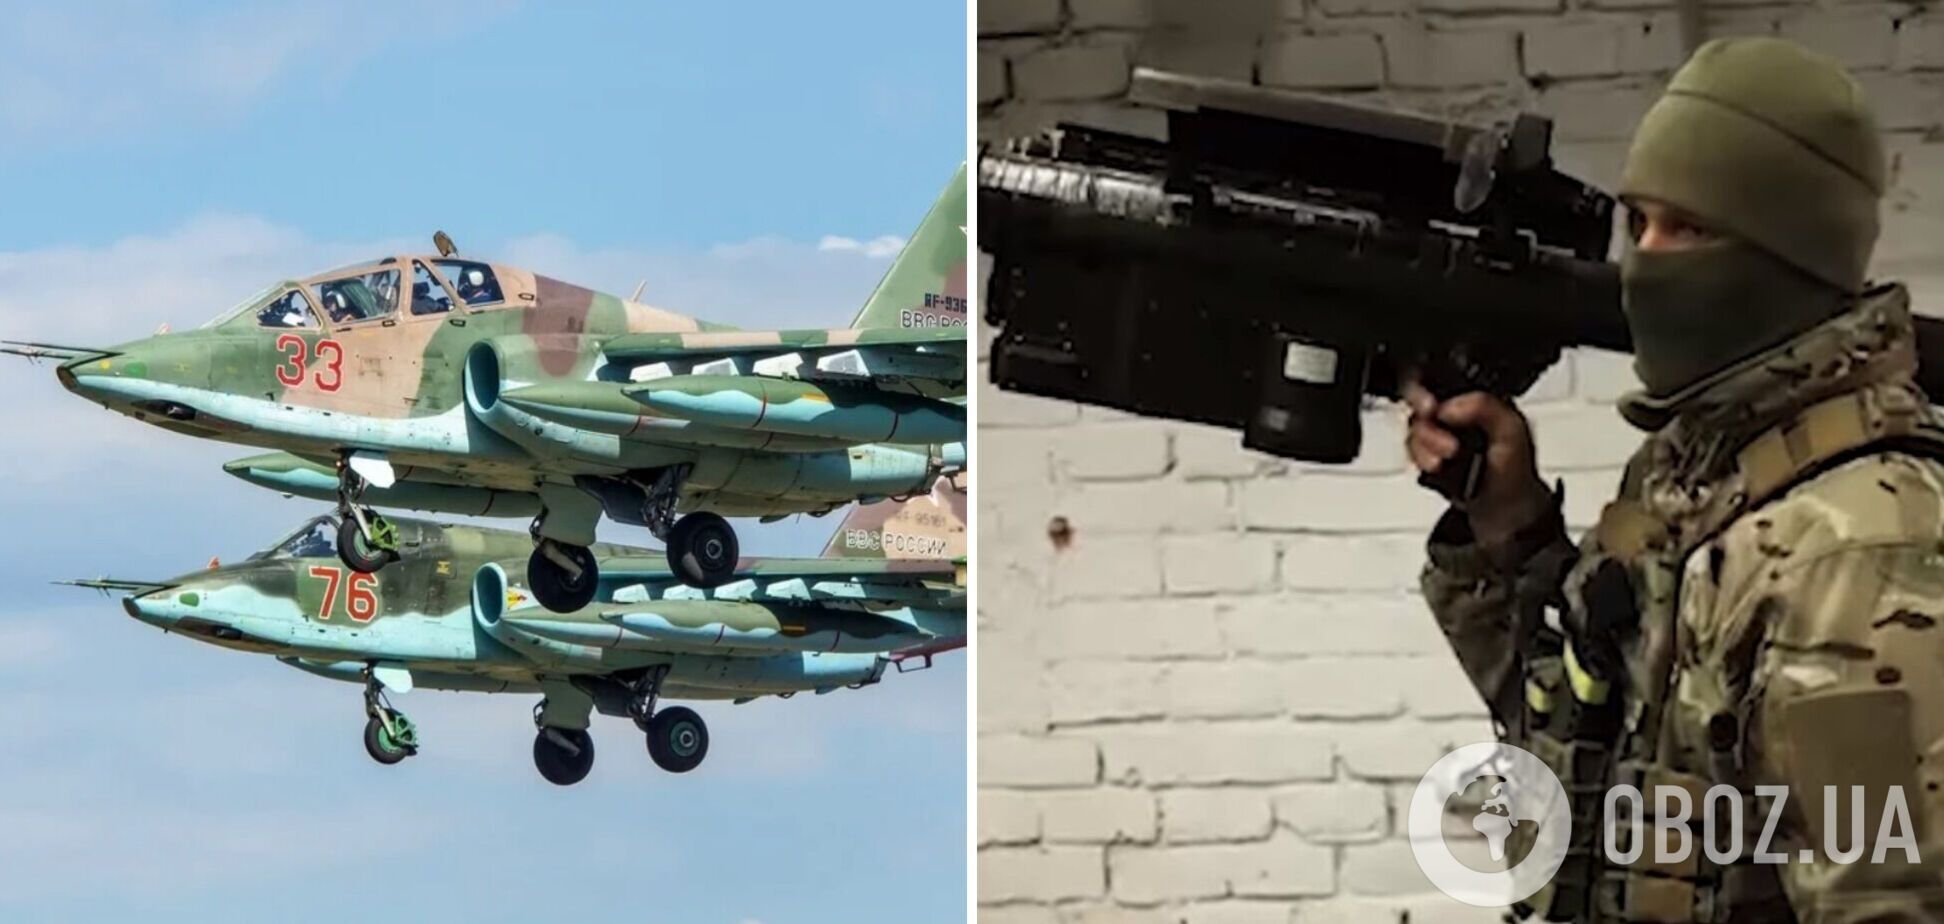 'Так будет с каждым врагом': в Мариуполе украинские защитники сбили вражеский самолет, он стал сотым на счету